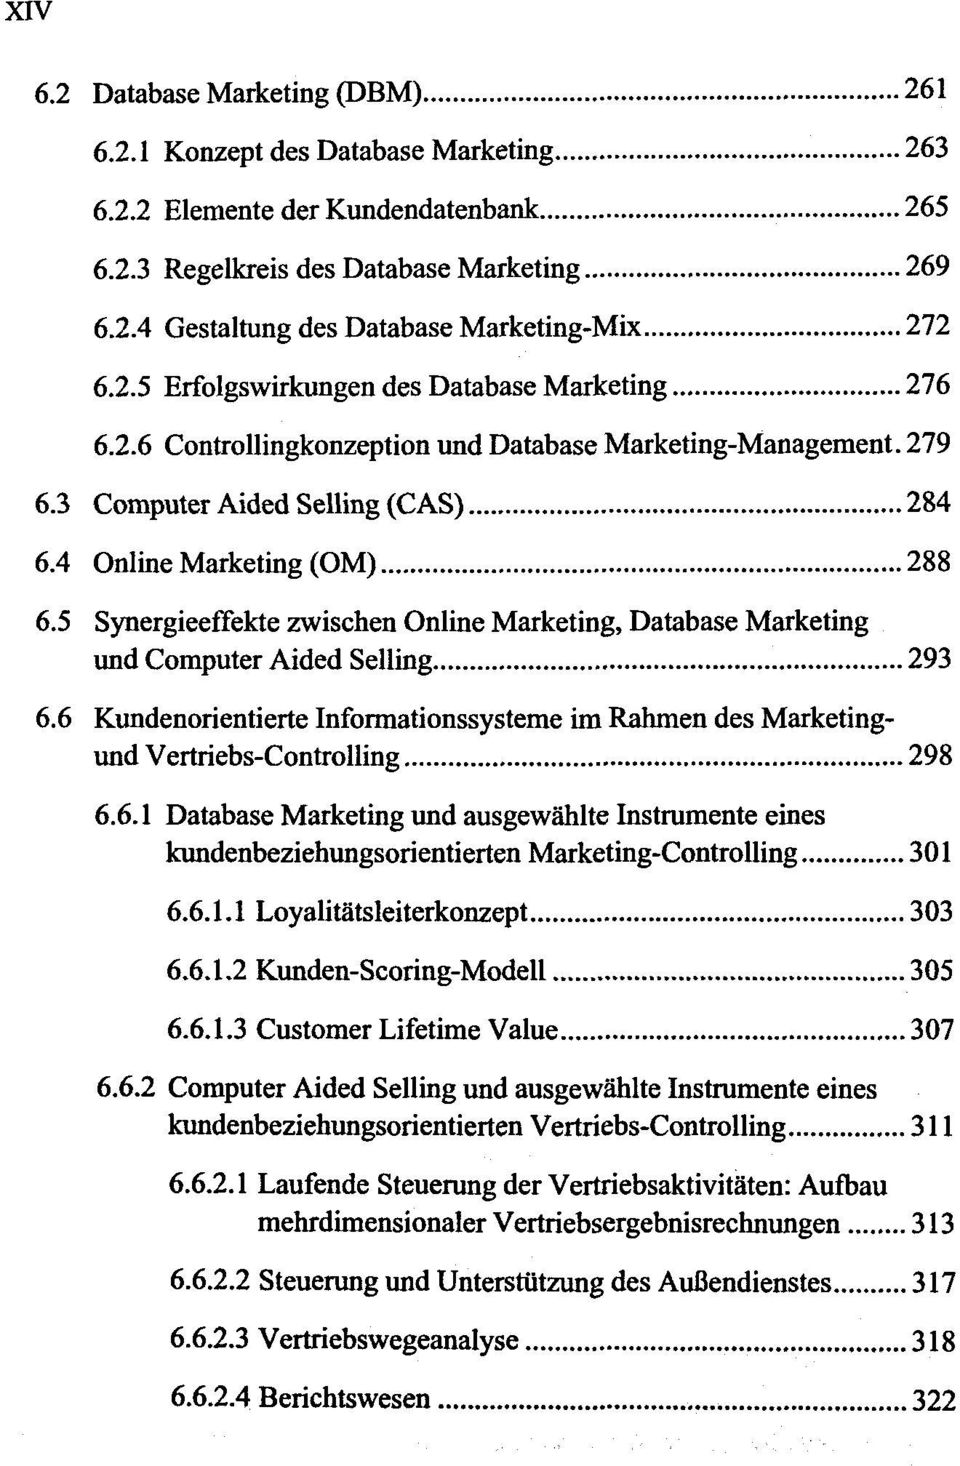 5 Synergieeffekte zwischen Online Marketing, Database Marketing und Computer Aided Selling 293 6.